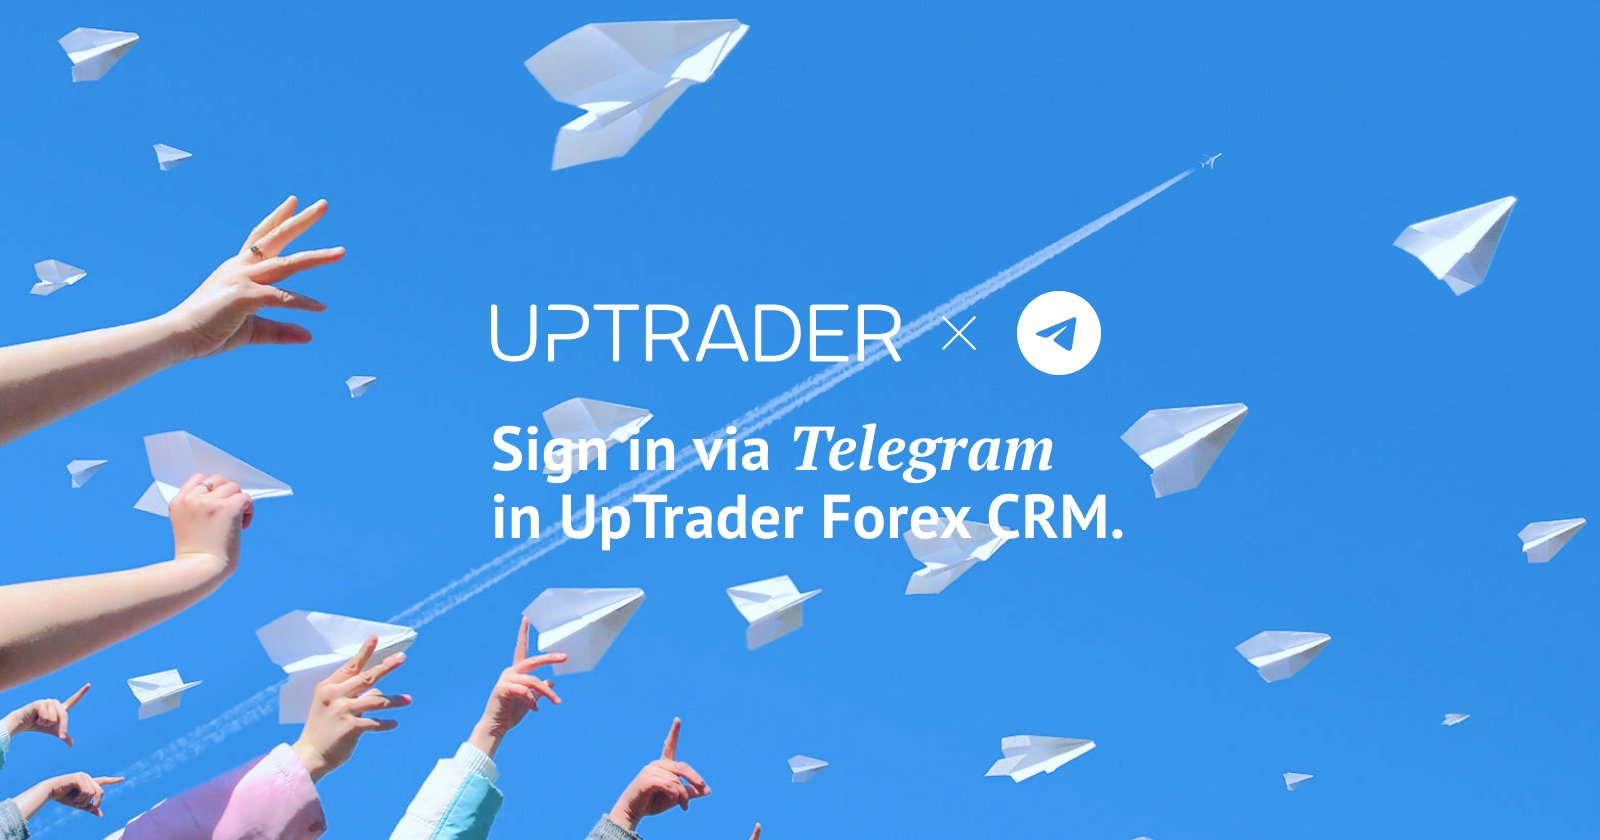 Sign in via Telegram in UpTrader Forex CRM